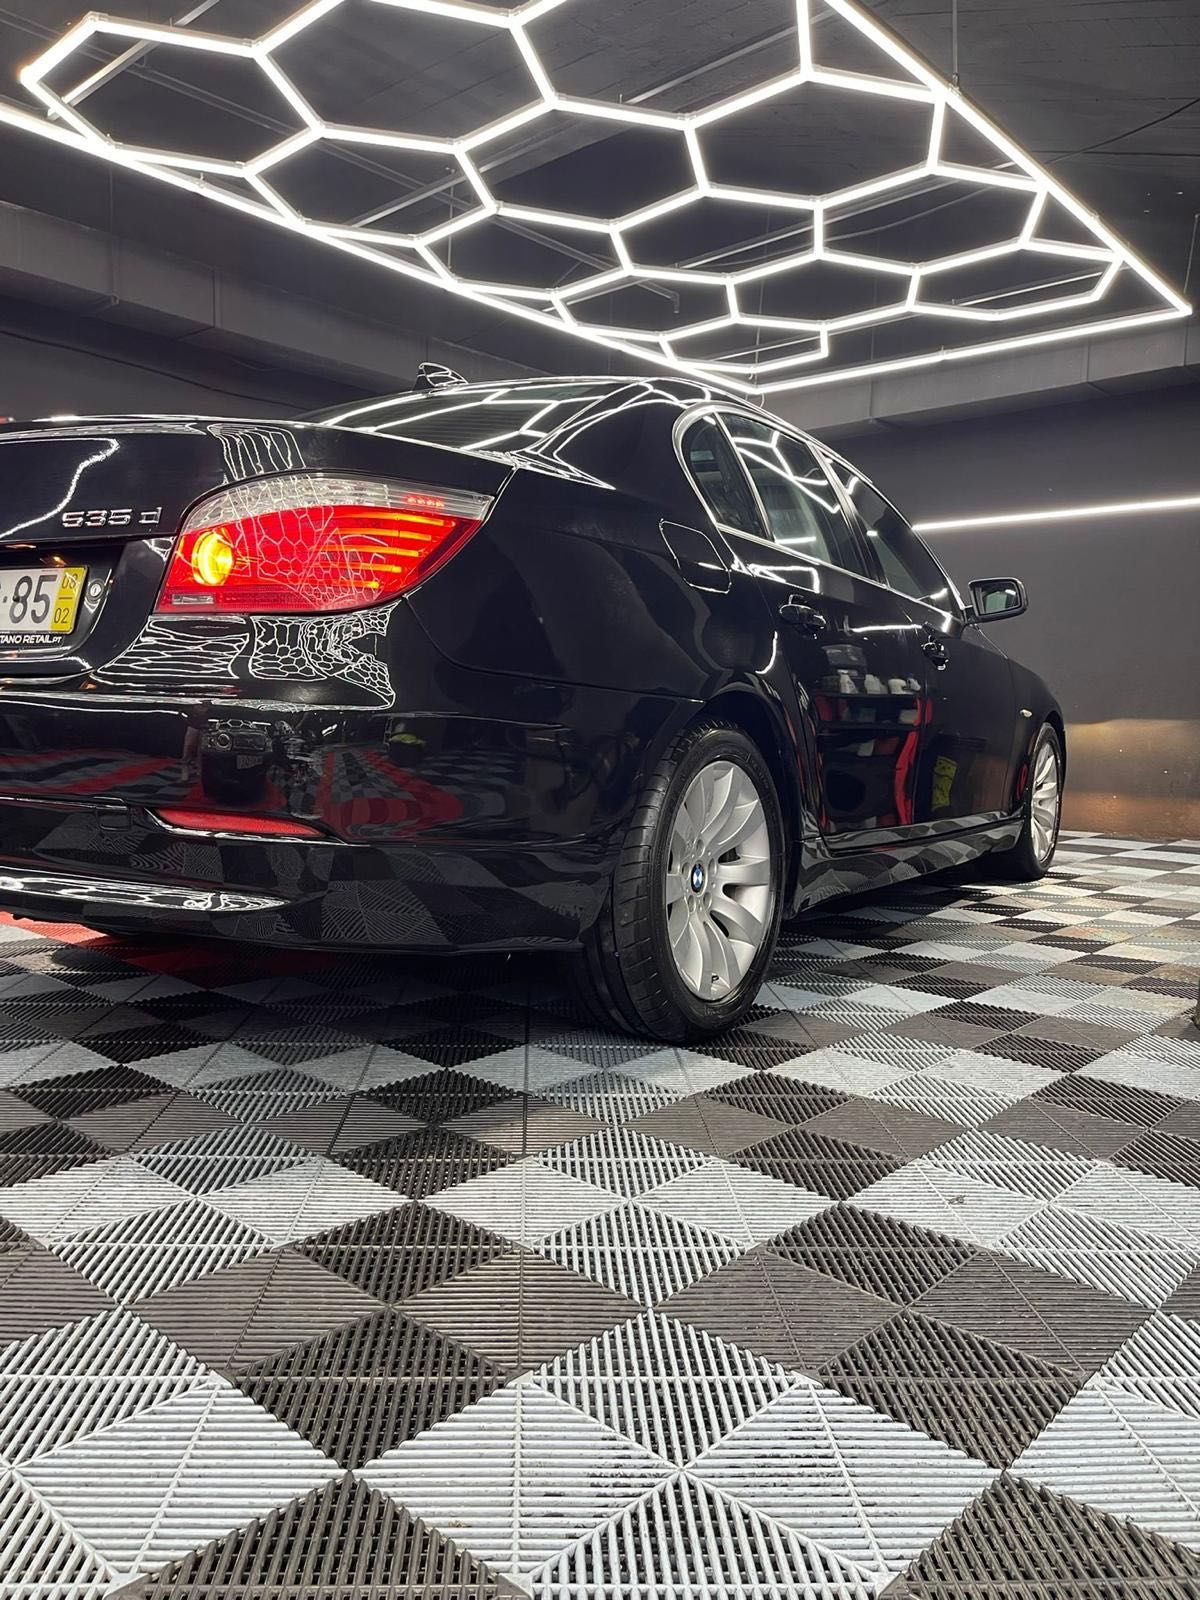 BMW E60 535d nacional